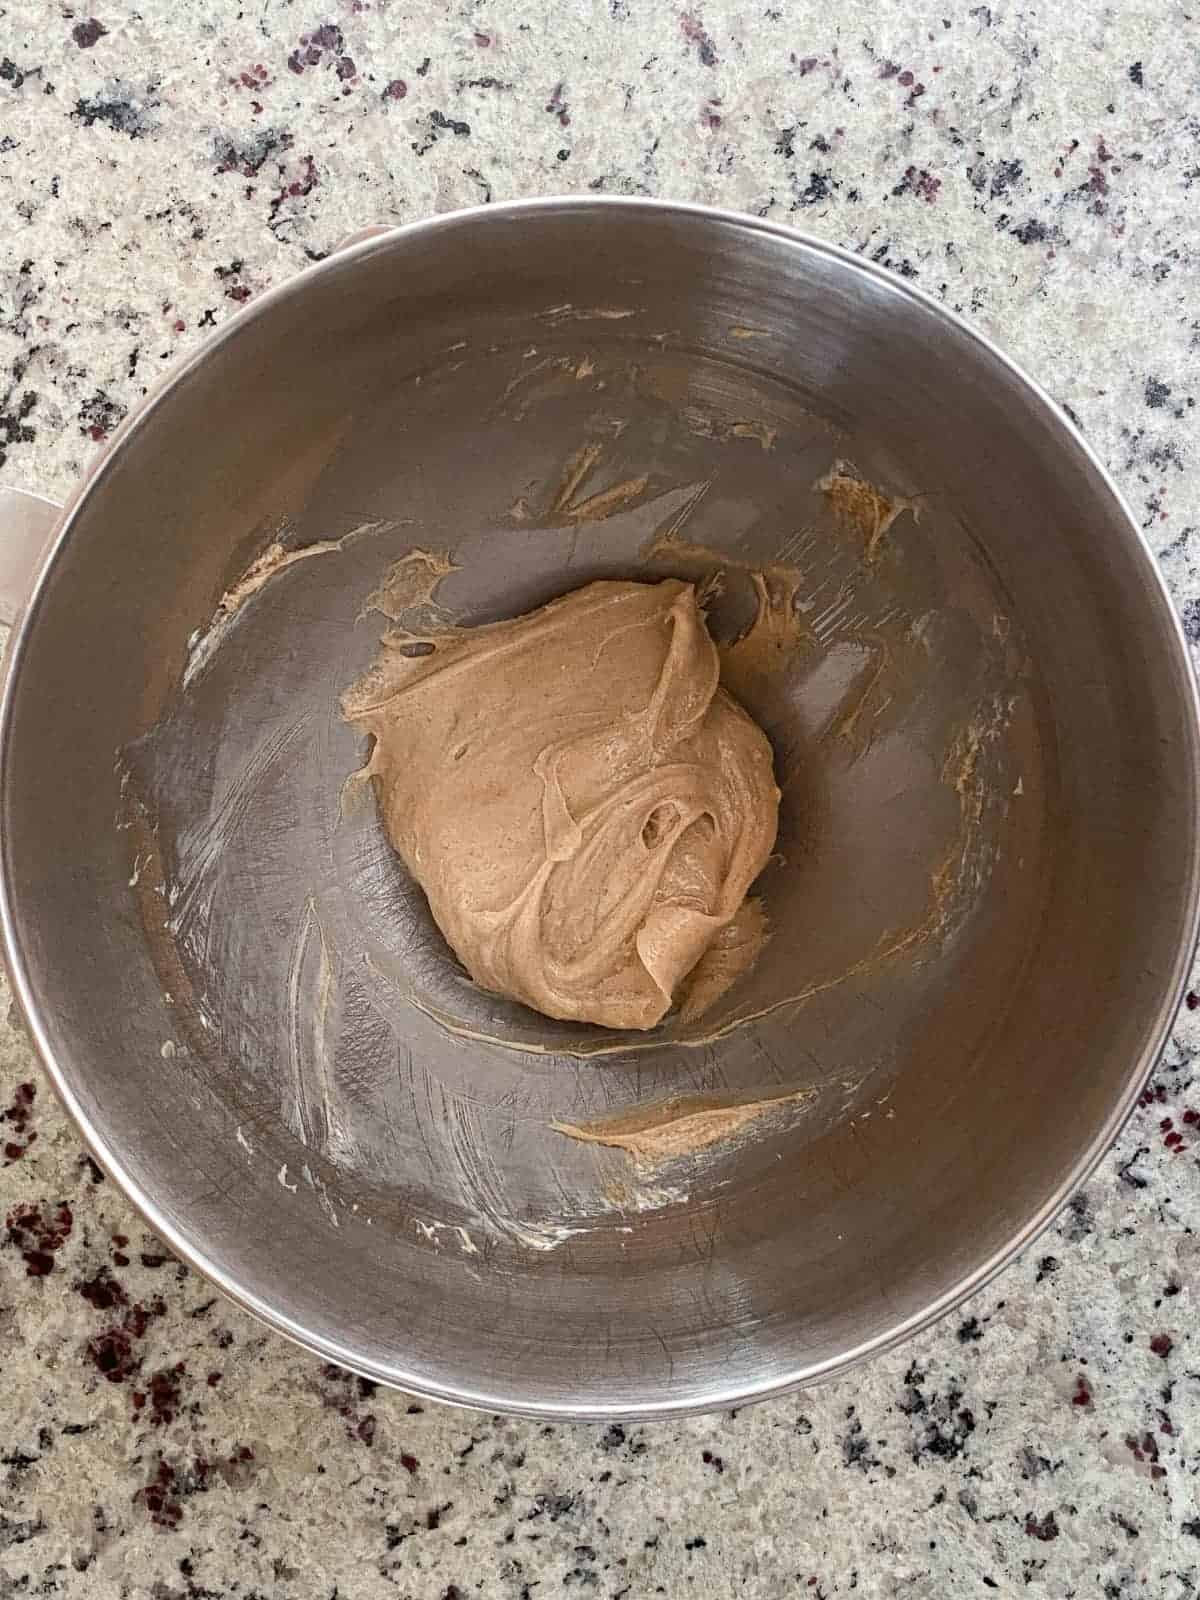 Making Cinnamon Pie, step 1.